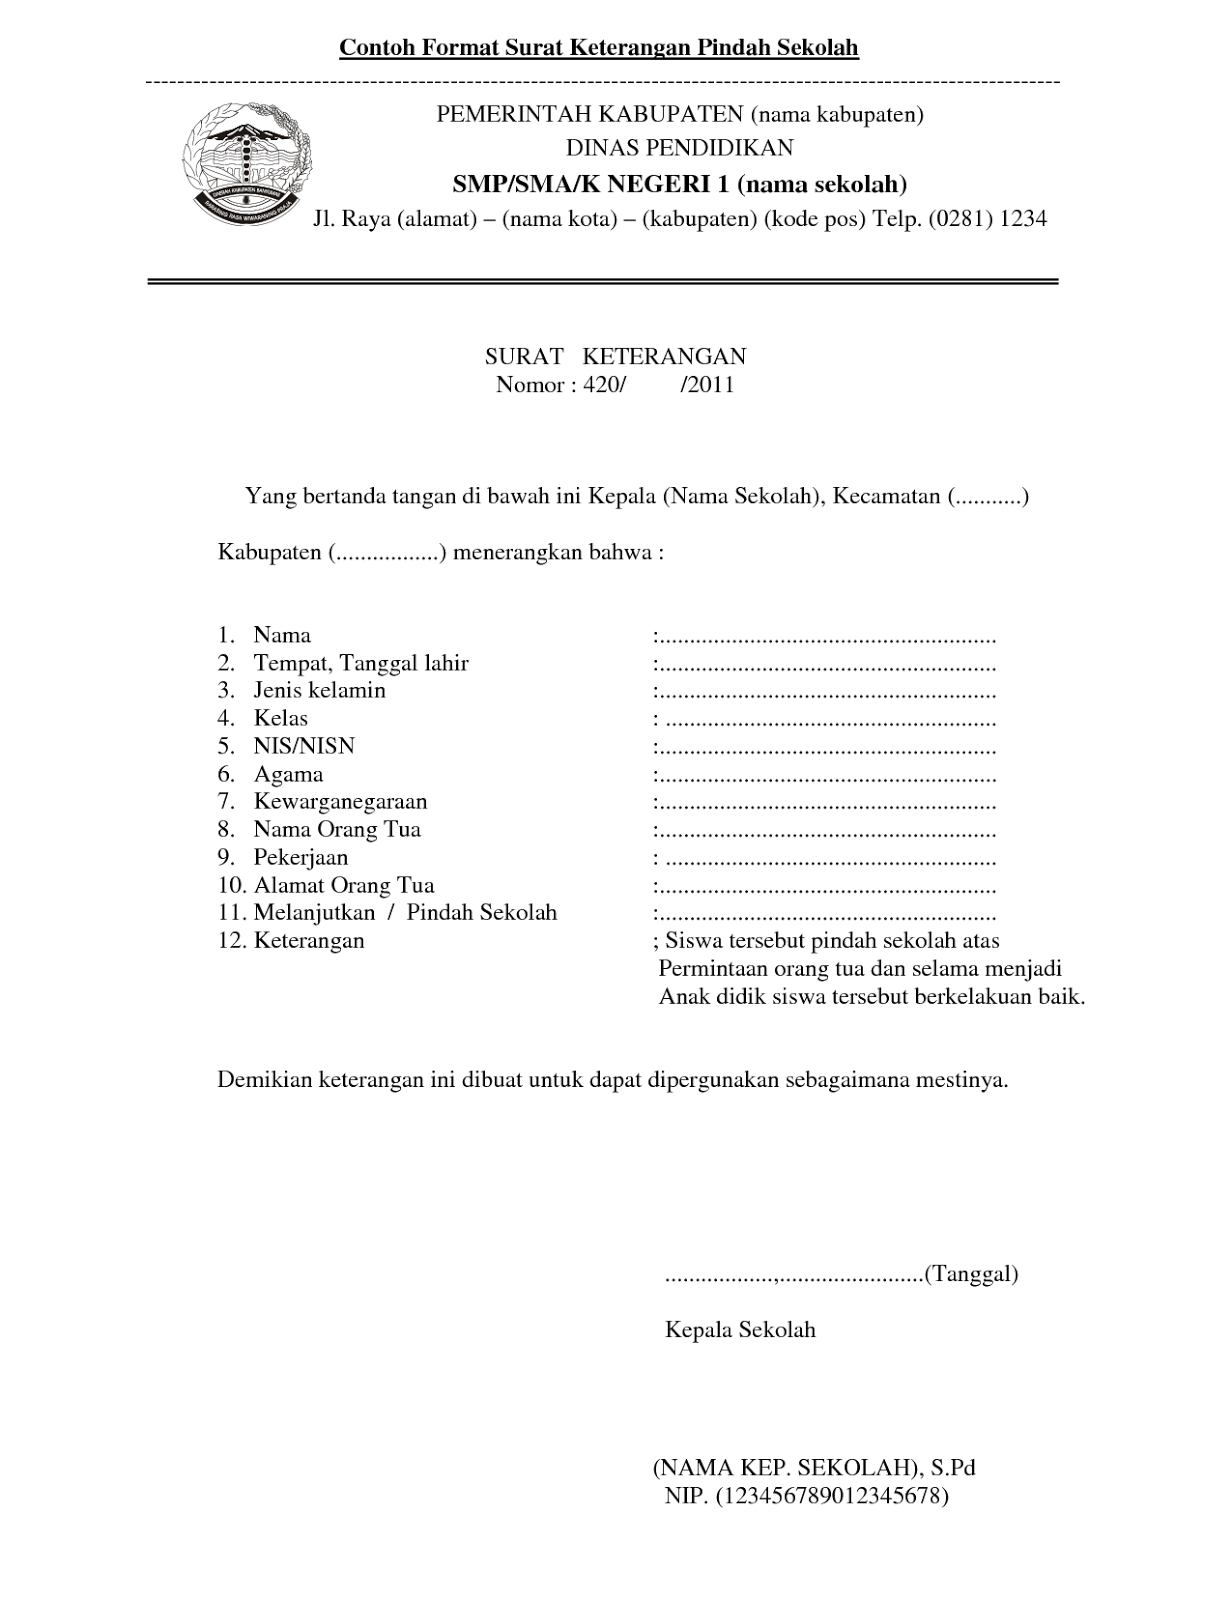 Contoh Surat Permohonan Nikah Di Masjid - Surat F